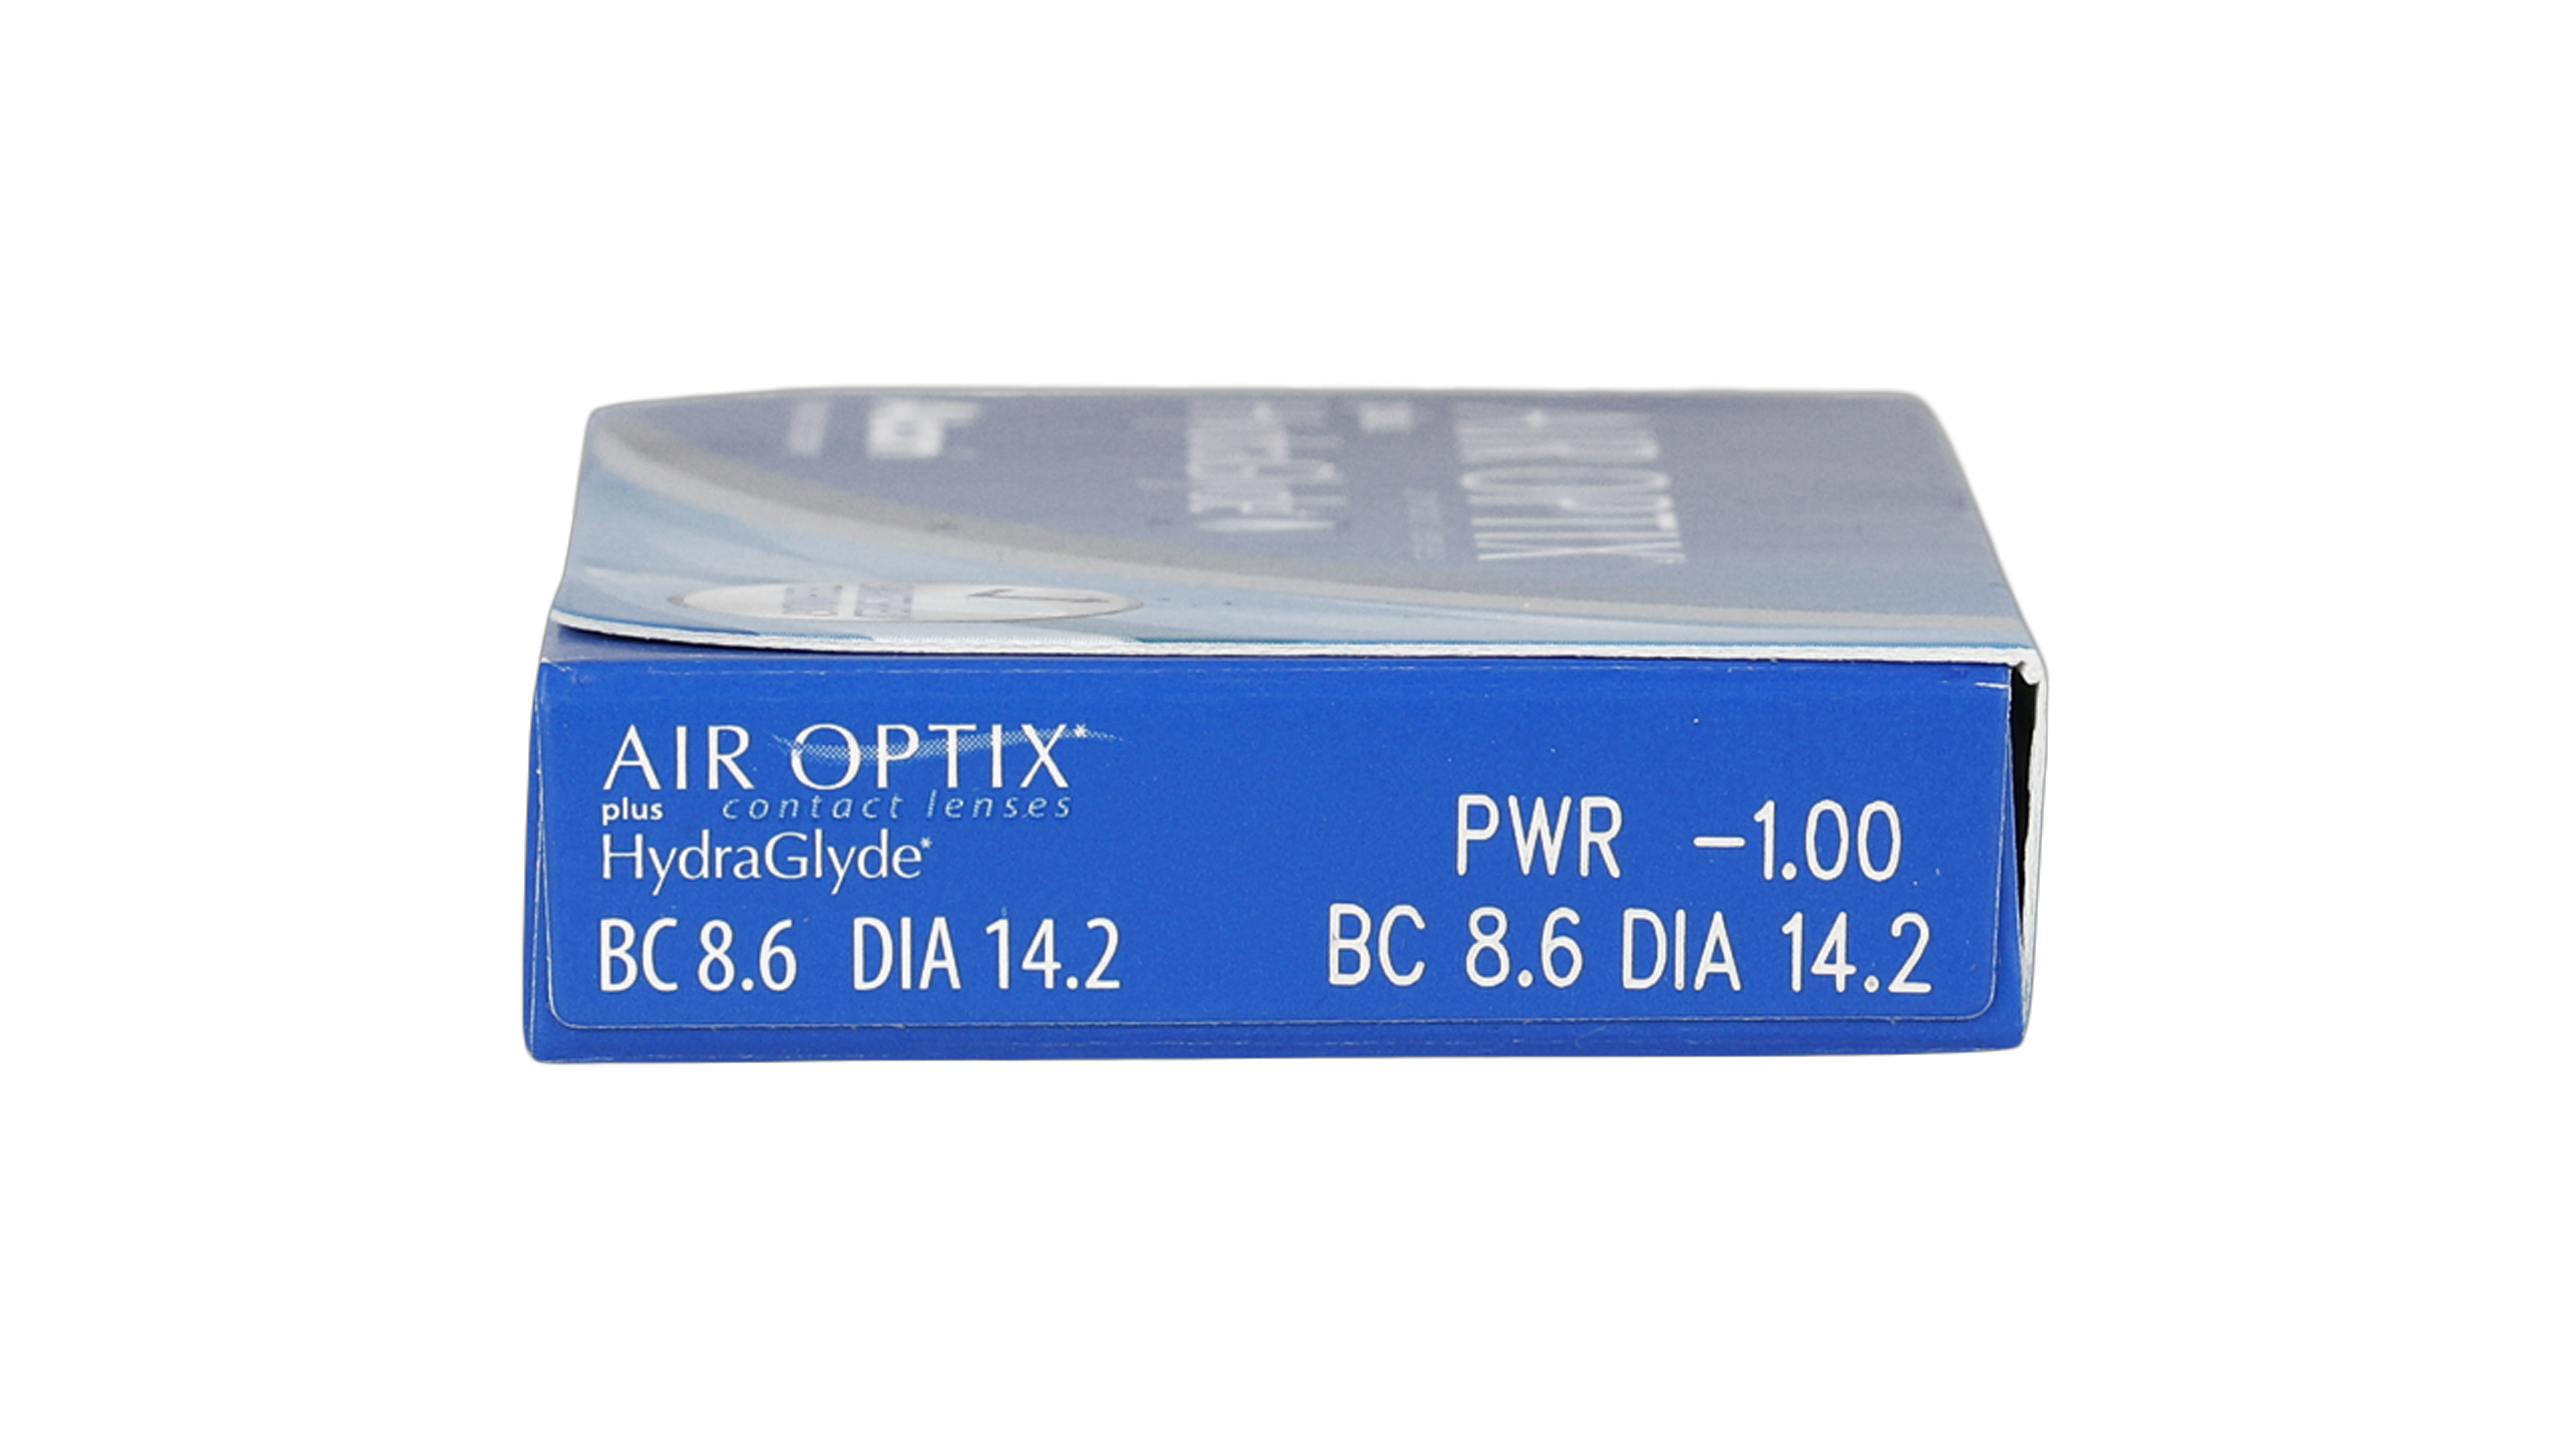 Parameter Air Optix Air Optix Hydraglyde 6 unidades Mensuales 6 lentillas por caja